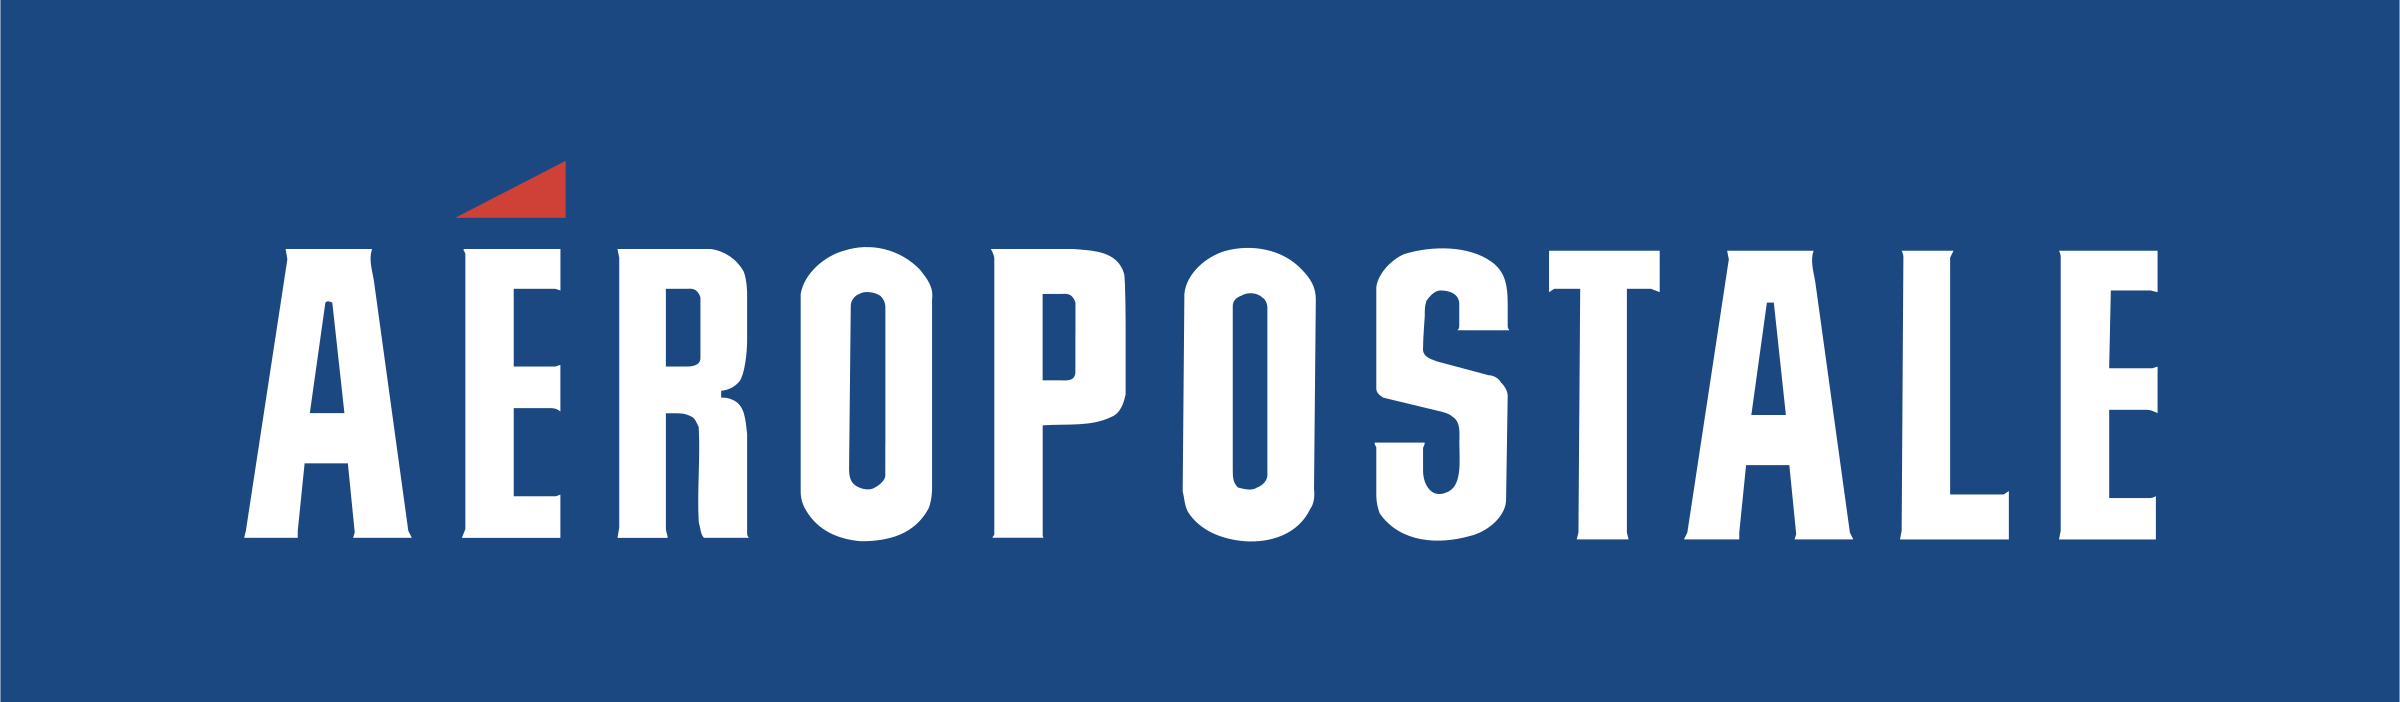 Aeropostale Logo - Aeropostale Logo PNG Transparent & SVG Vector